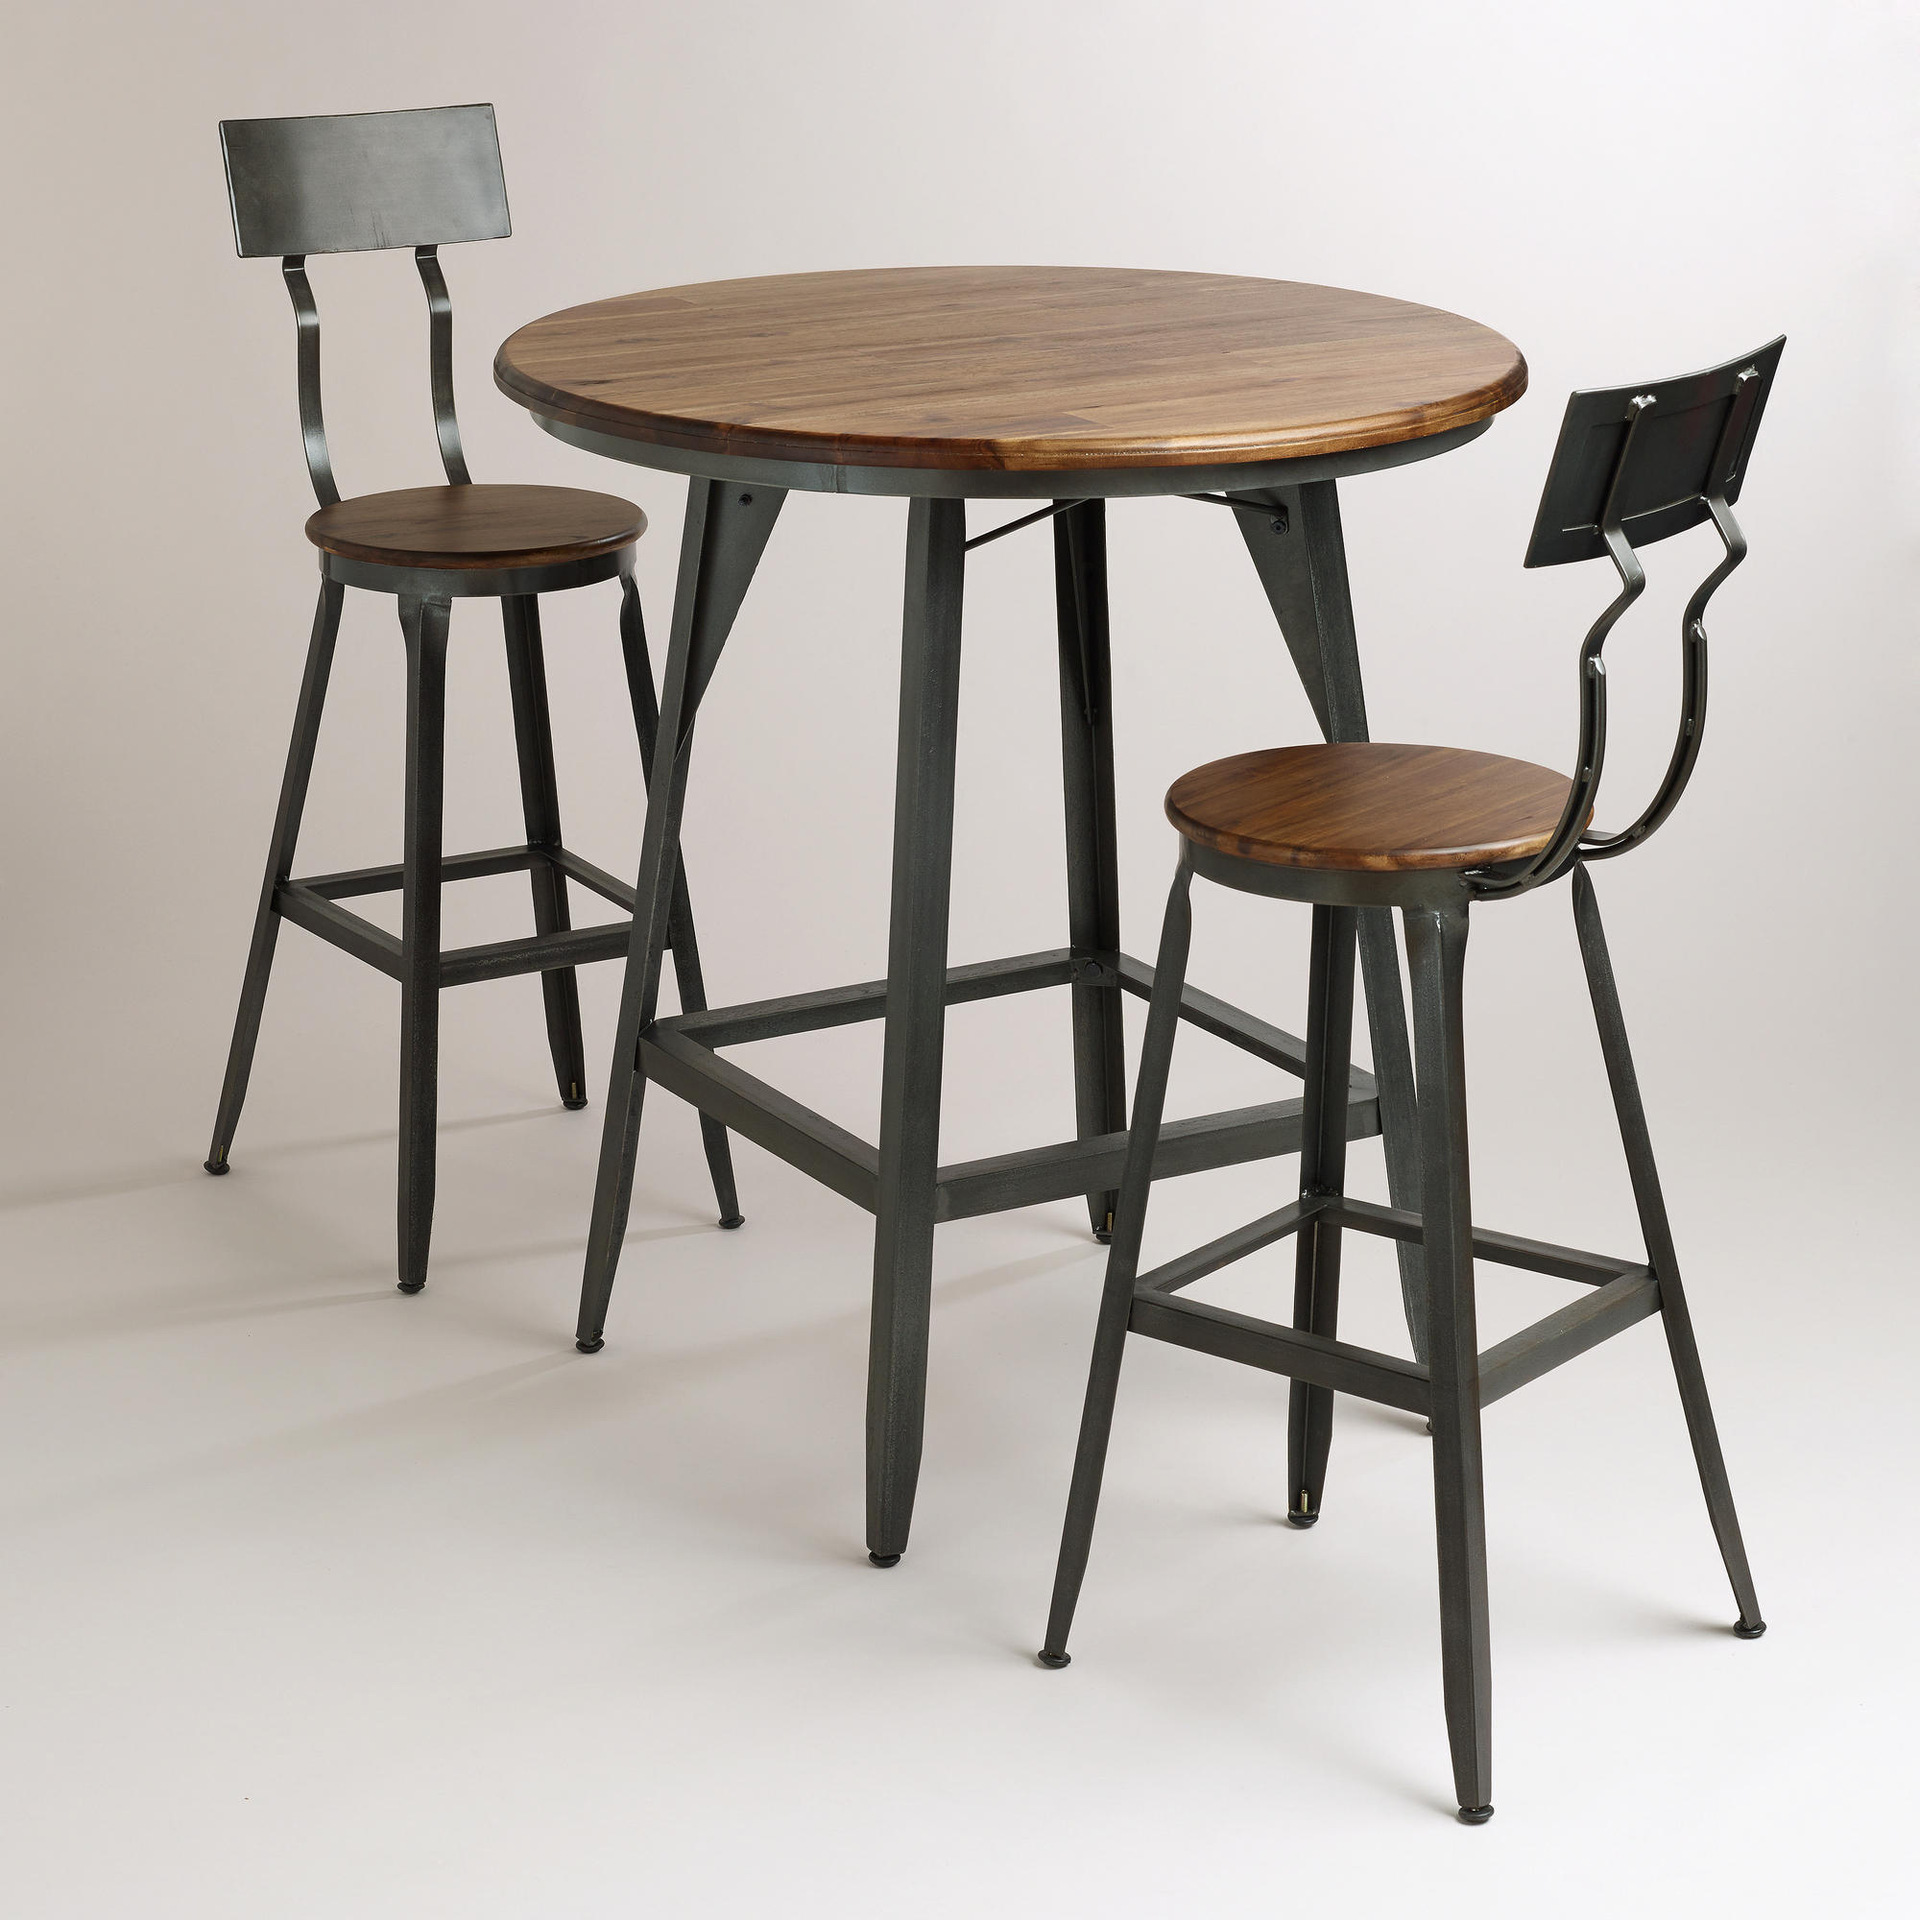 复古实木餐桌椅组合户外圆形咖啡厅小型实木桌椅组合休闲成套桌椅